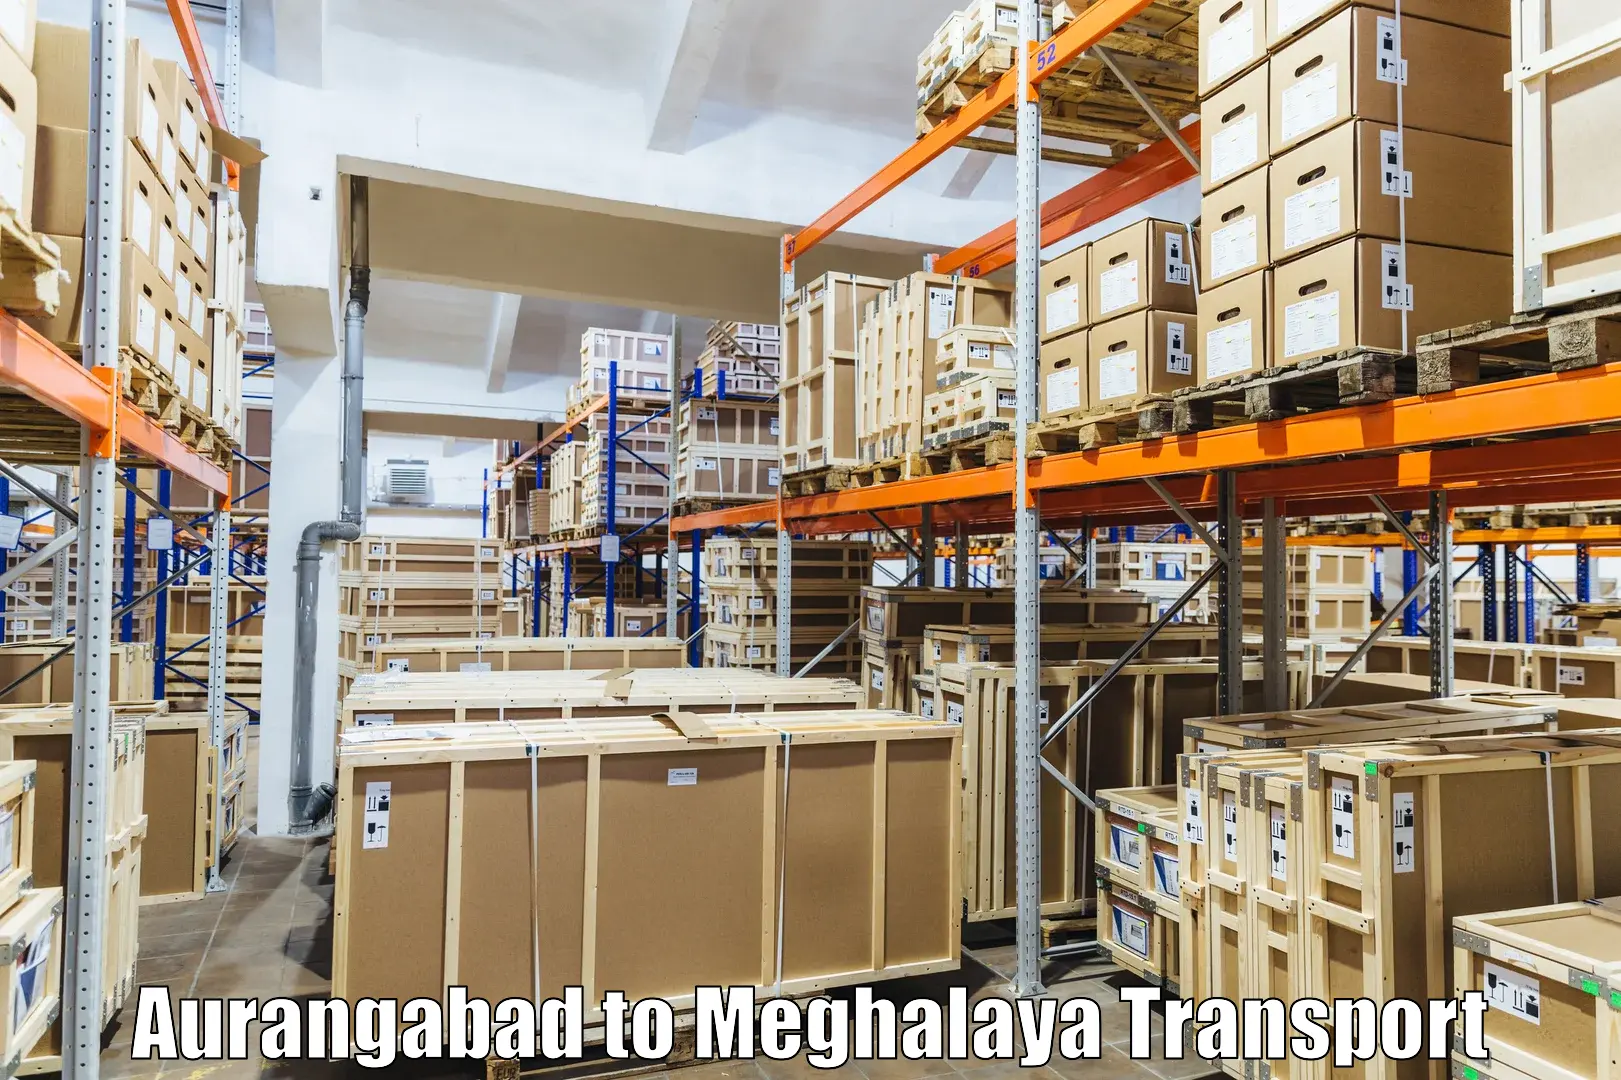 Furniture transport service Aurangabad to Umsaw